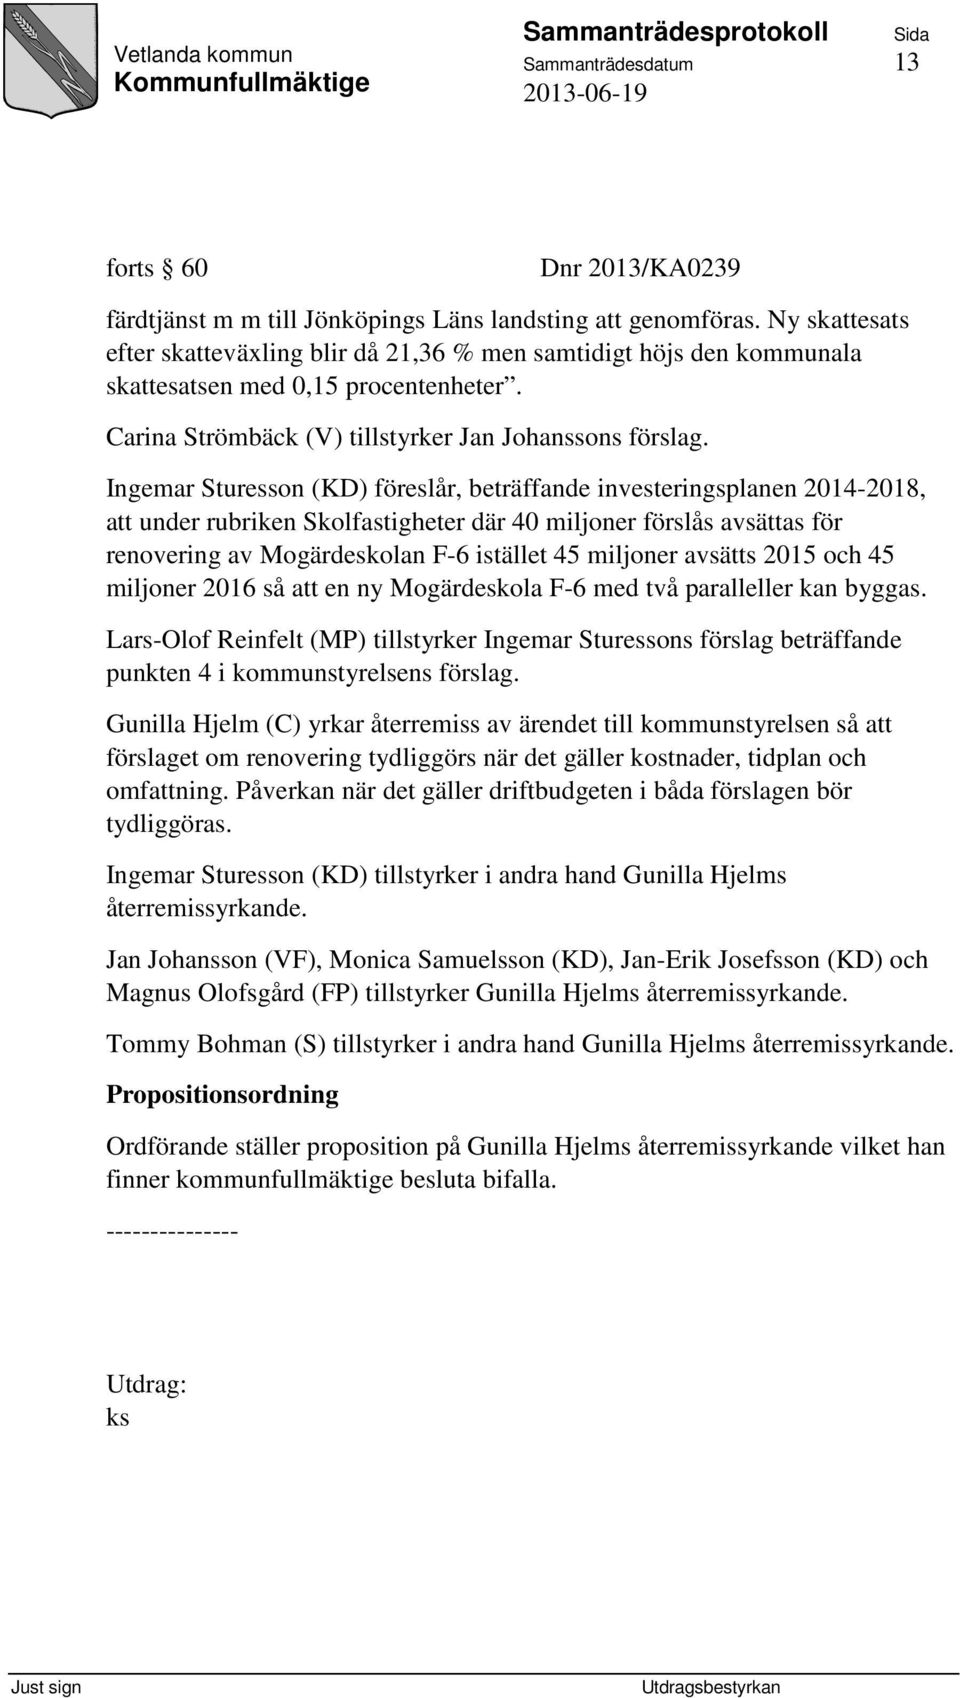 Ingemar Sturesson (KD) föreslår, beträffande investeringsplanen 2014-2018, att under rubriken Skolfastigheter där 40 miljoner förslås avsättas för renovering av Mogärdeskolan F-6 istället 45 miljoner